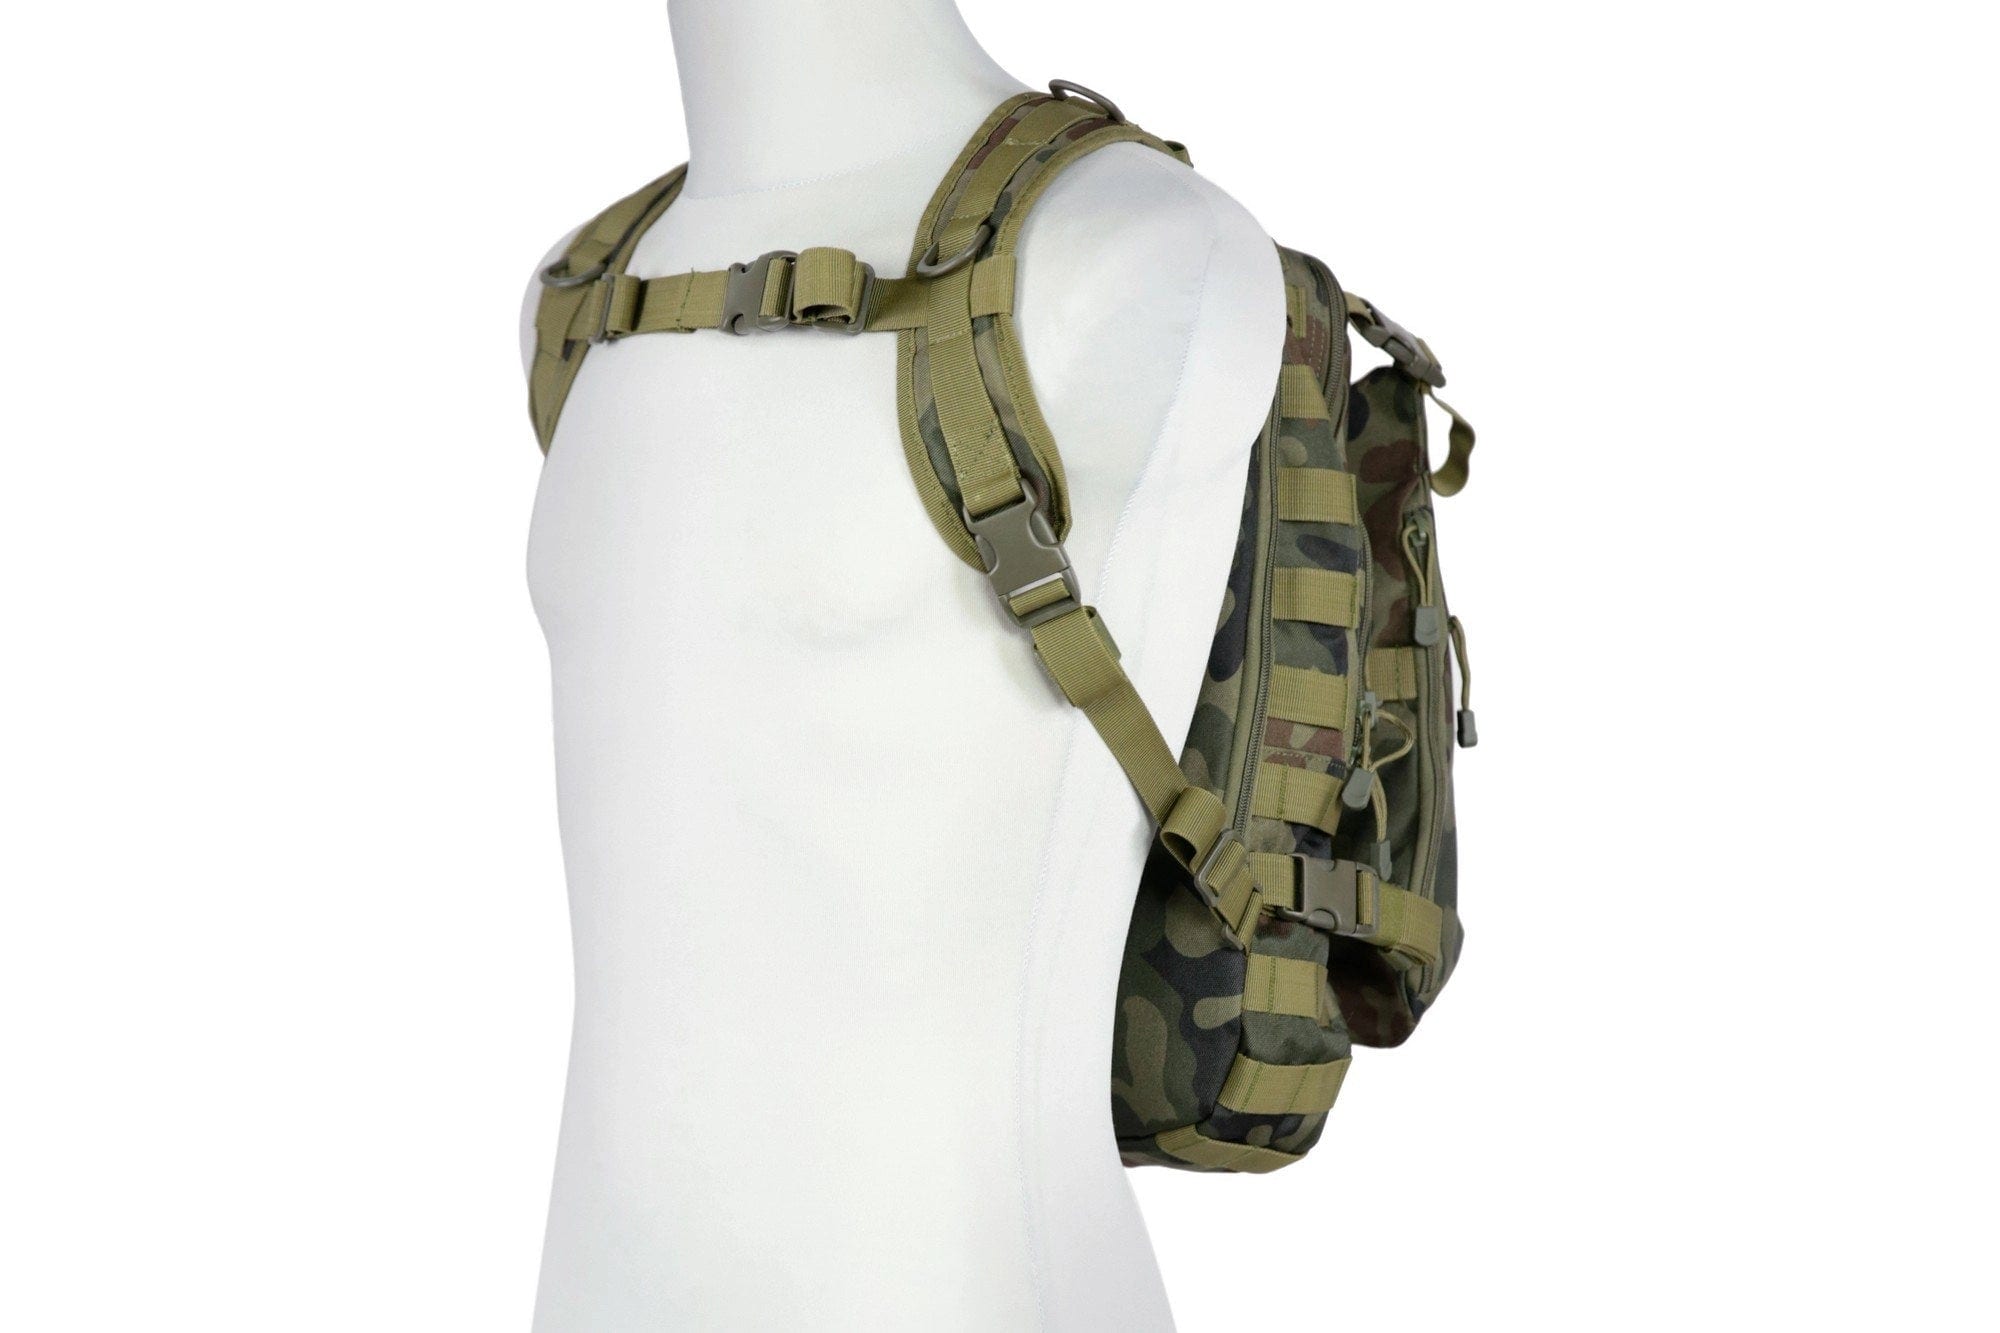 Tactical Backpack - wz.93 Polish Woodland